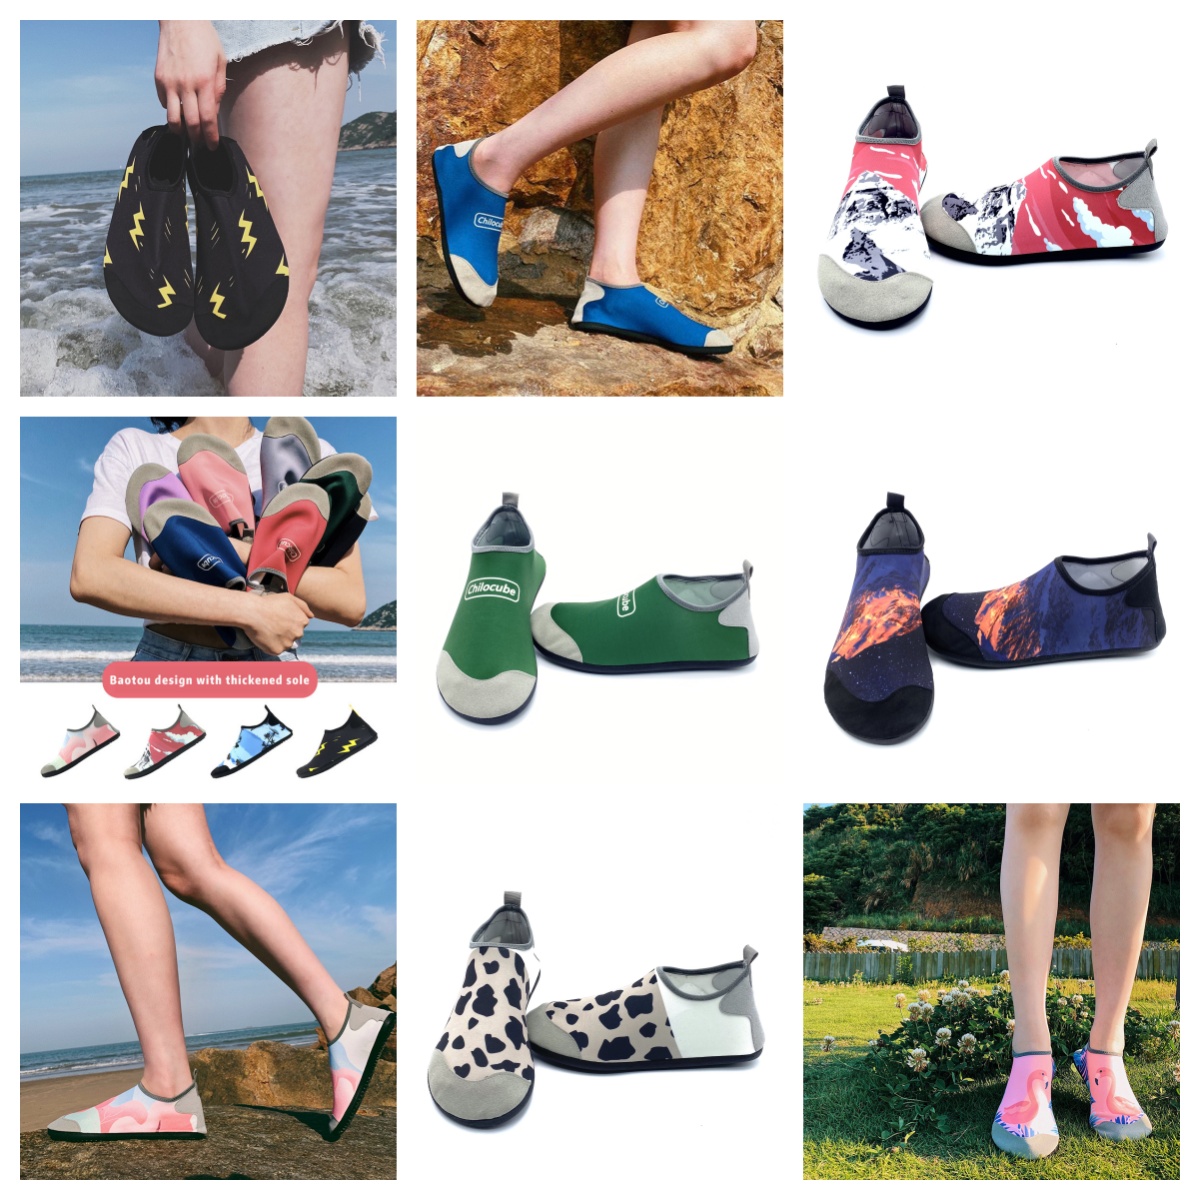 Buty sportowe gai sandał mężczyzna kobieta brodzienie buty boso boso butów greszczem plaże na świeżym powietrzu para butów potoku rozmiar 35-46 EUR